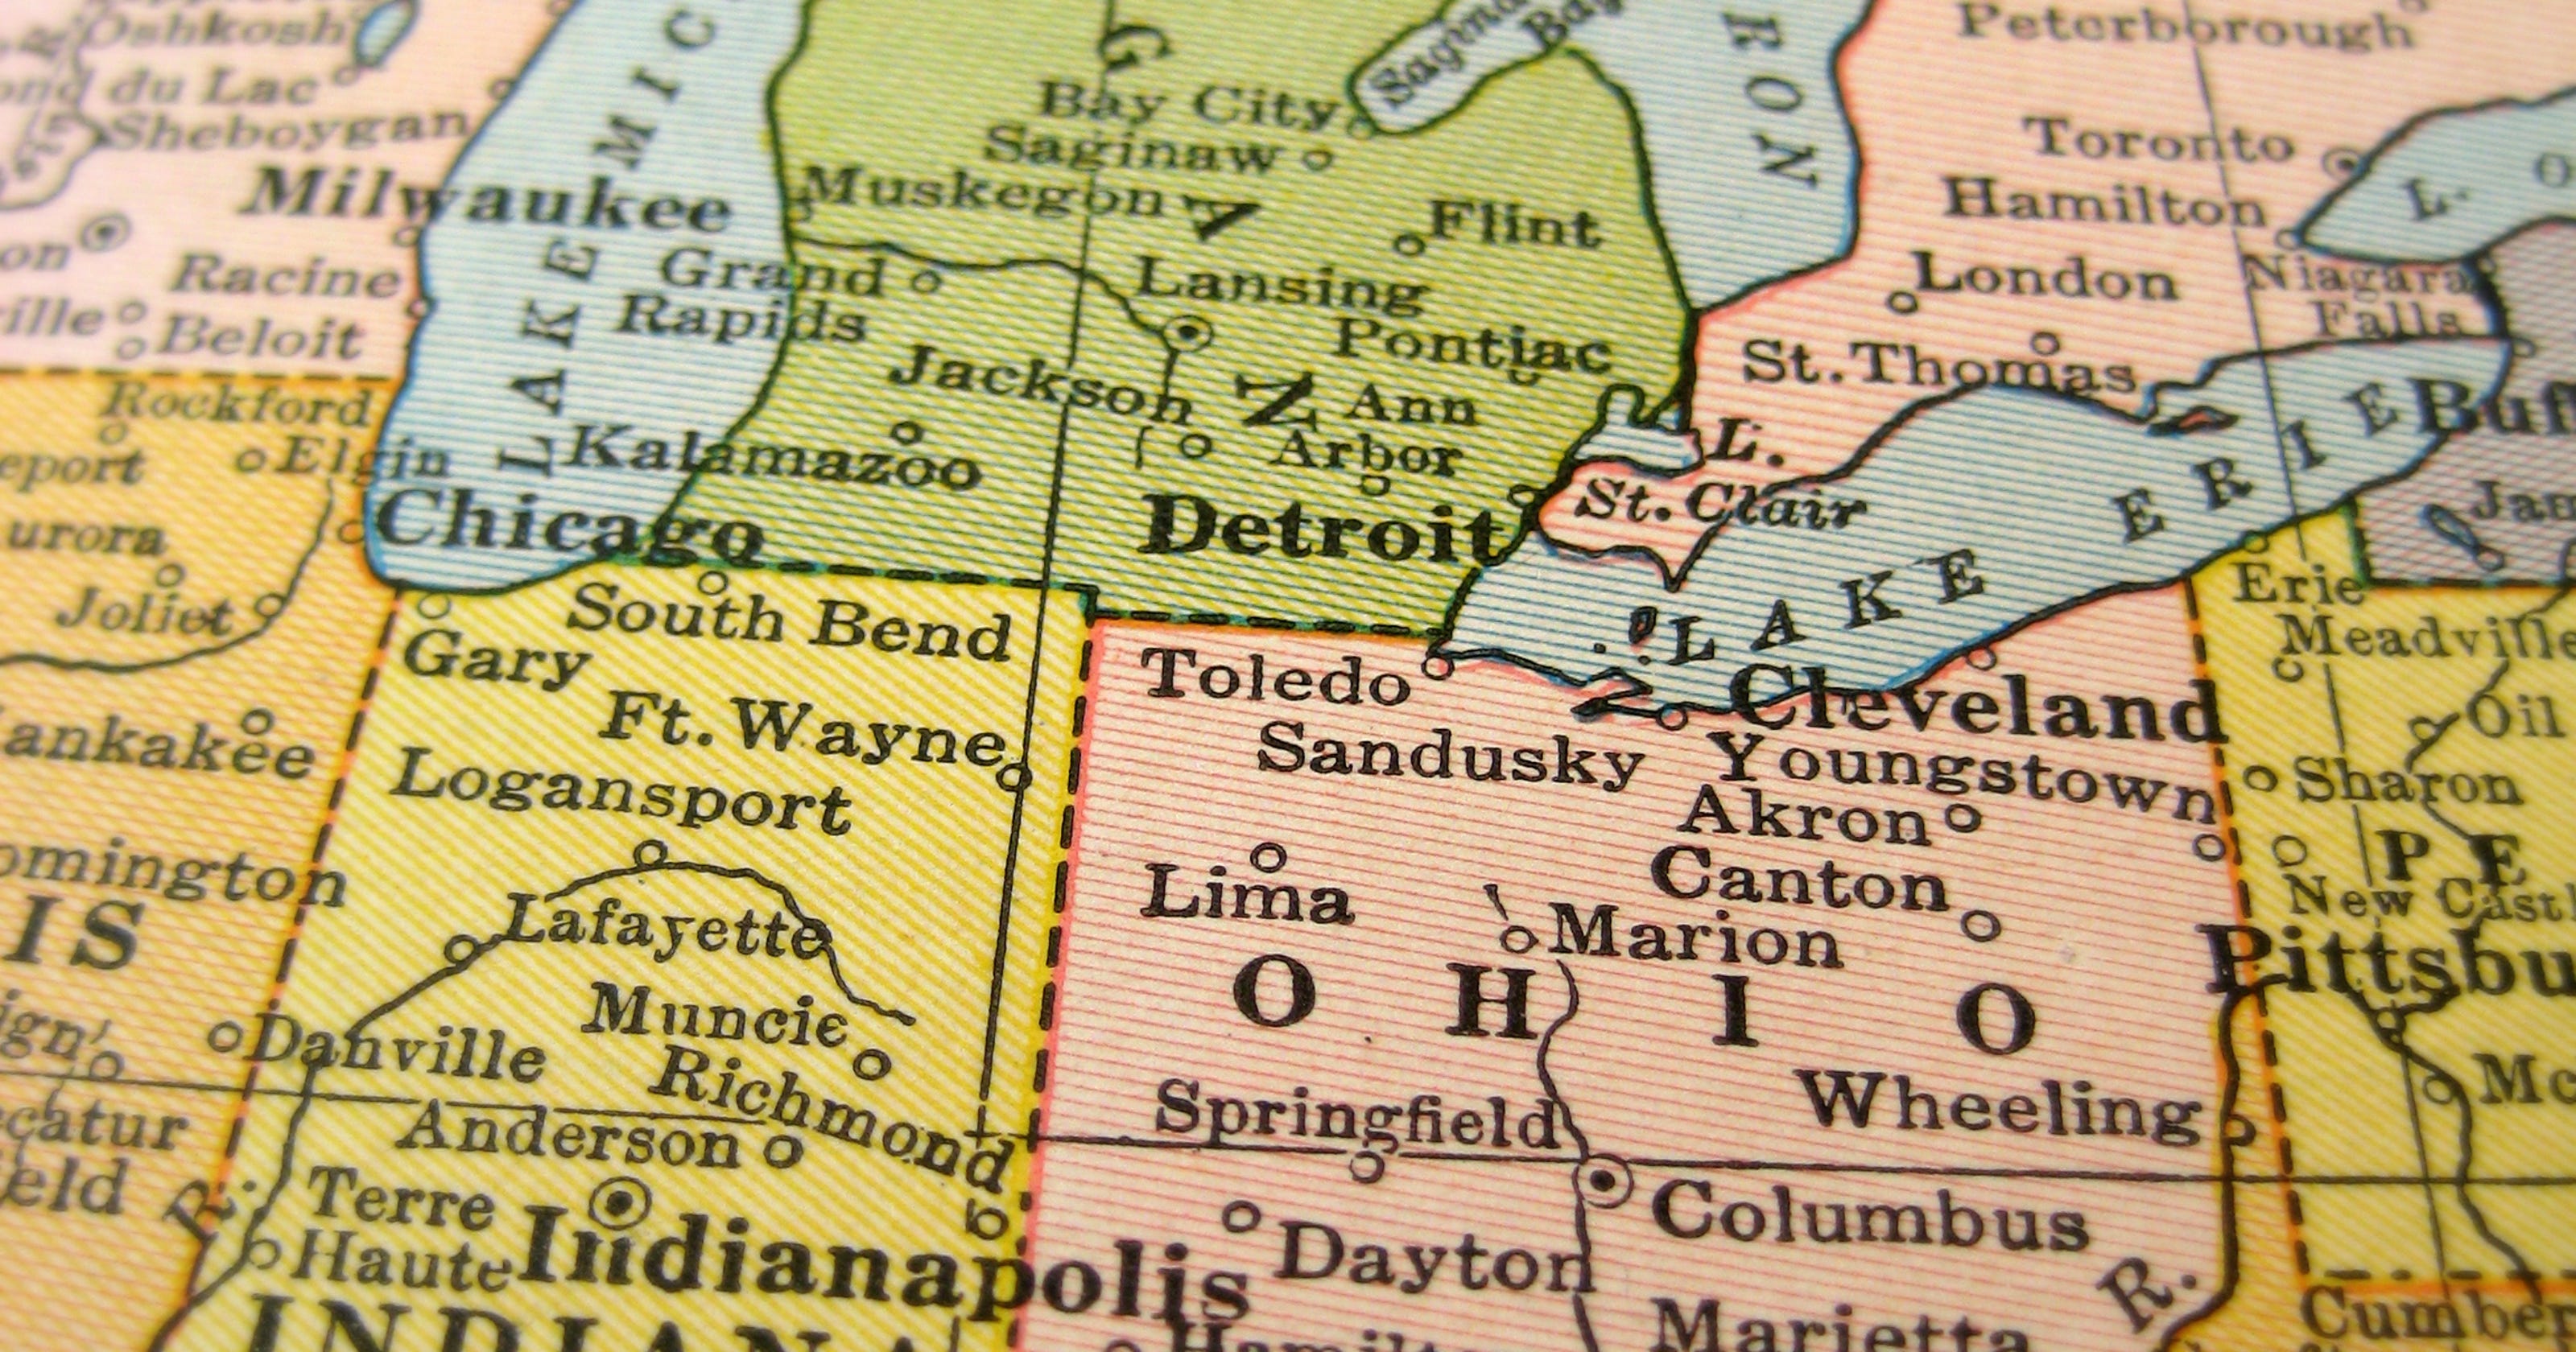 Michigan vs. Ohio Which state has the edge?